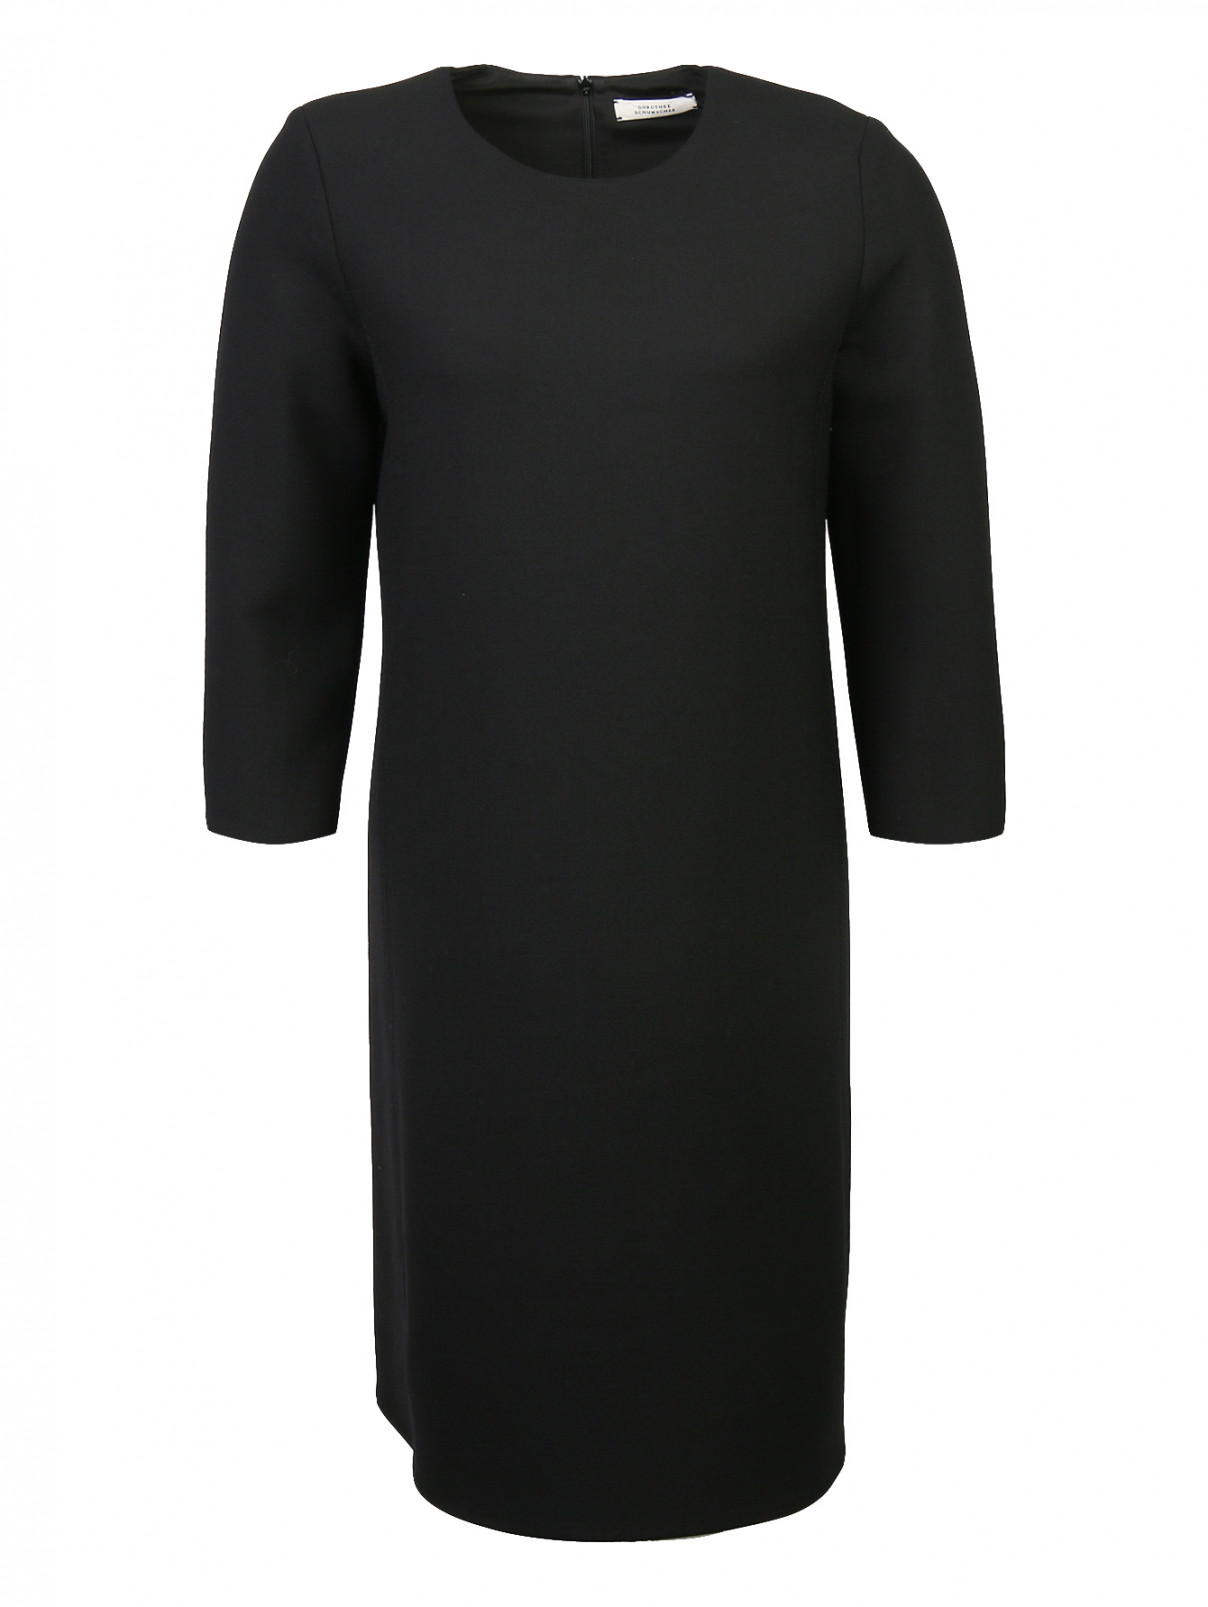 Платье из смешанной шерсти с рукавами 3/4 Dorothee Schumacher  –  Общий вид  – Цвет:  Черный